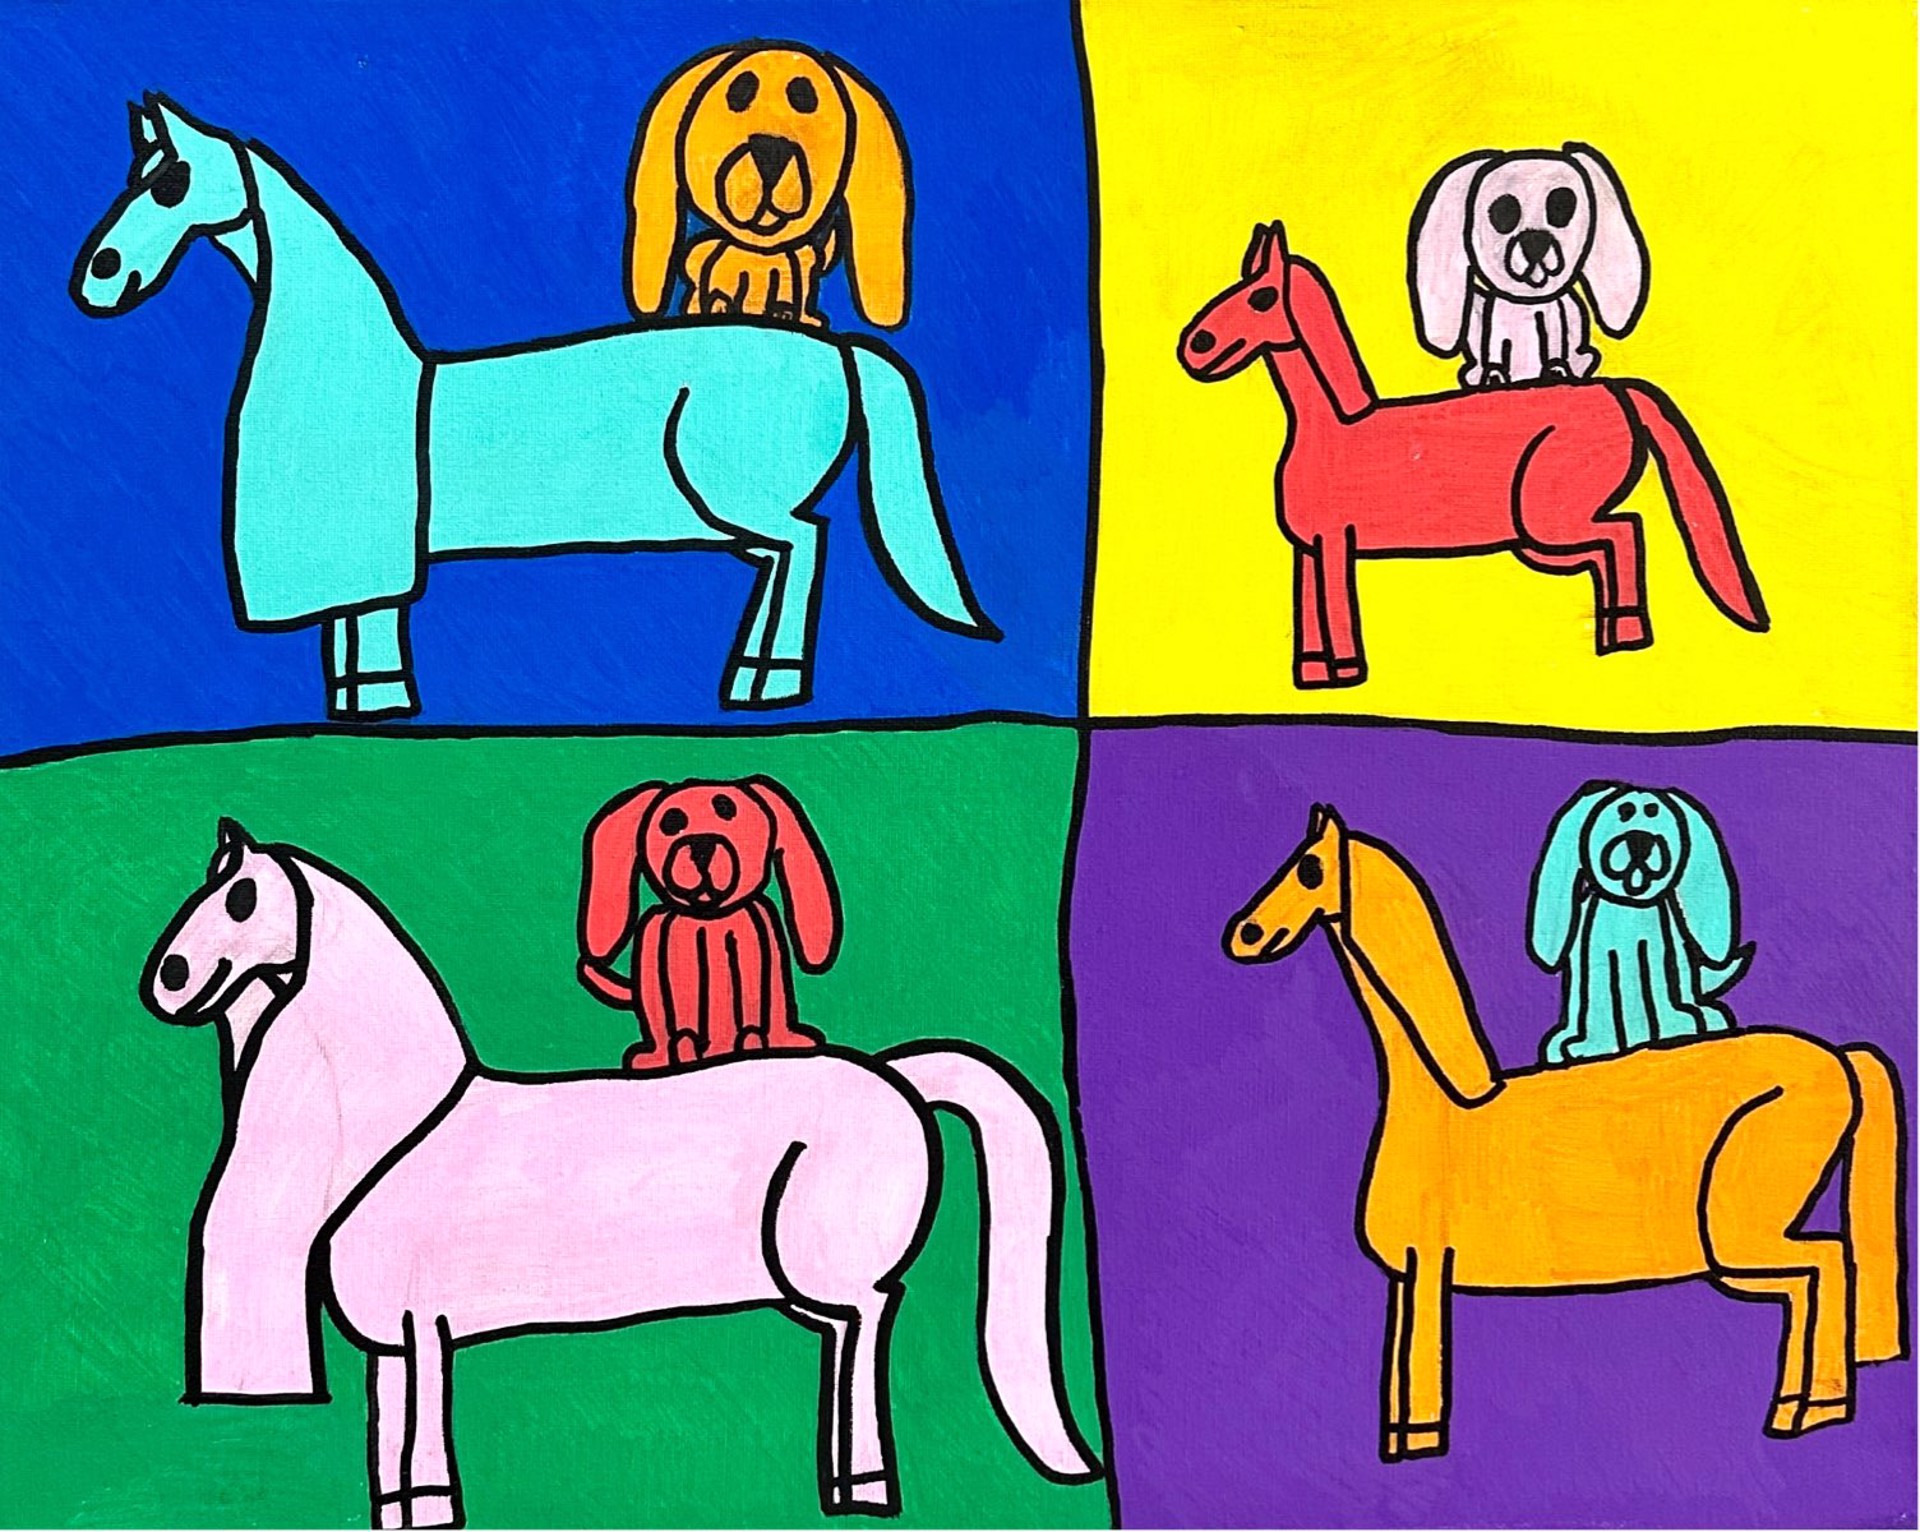 "Dog & Pony" by Alex T. by One Step Beyond